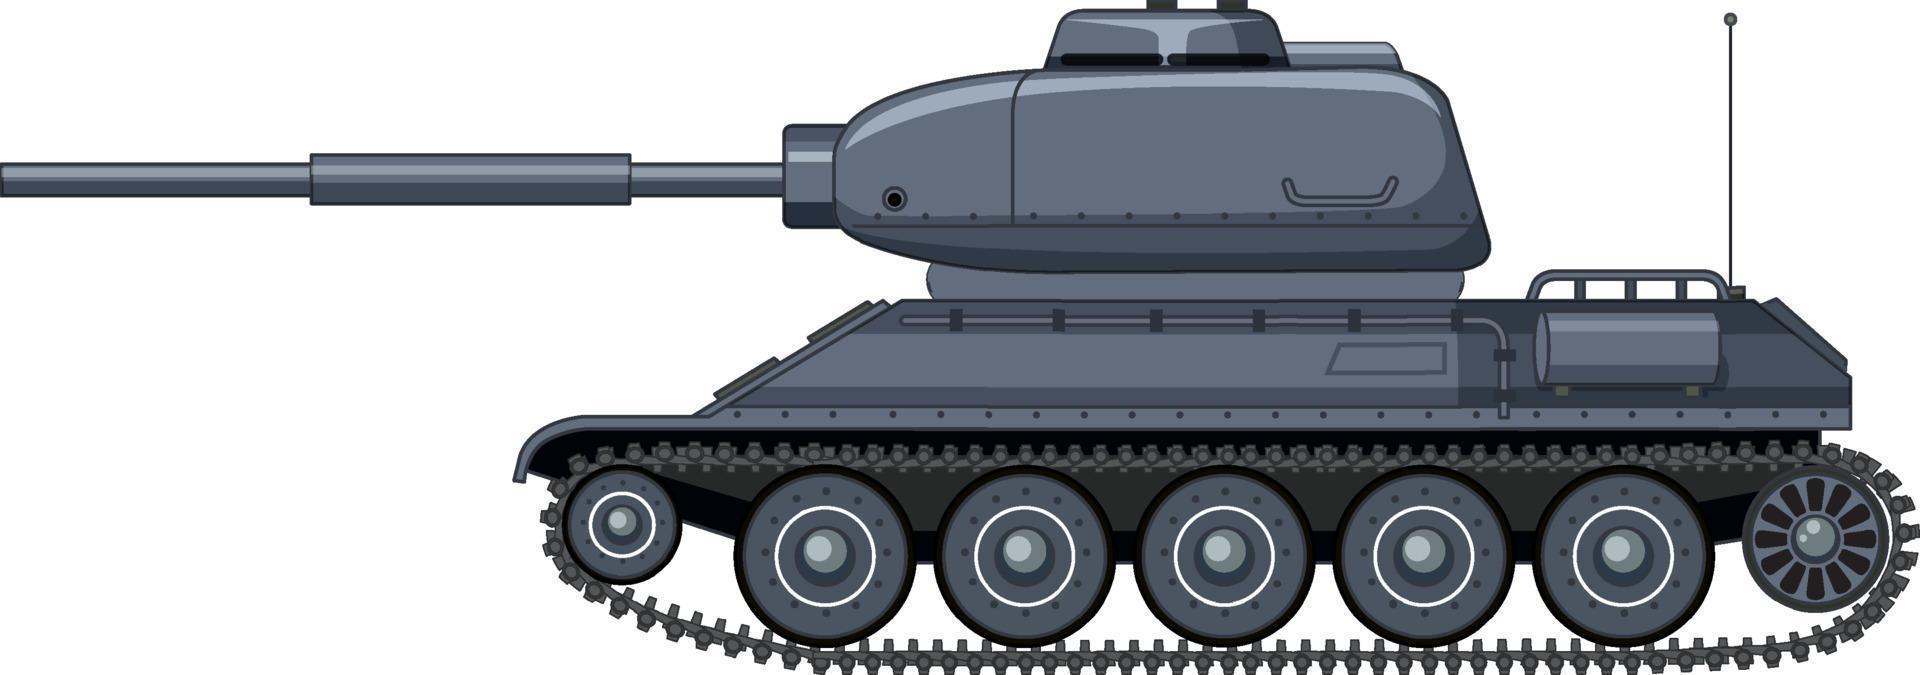 militär stridsvagn på vit bakgrund vektor